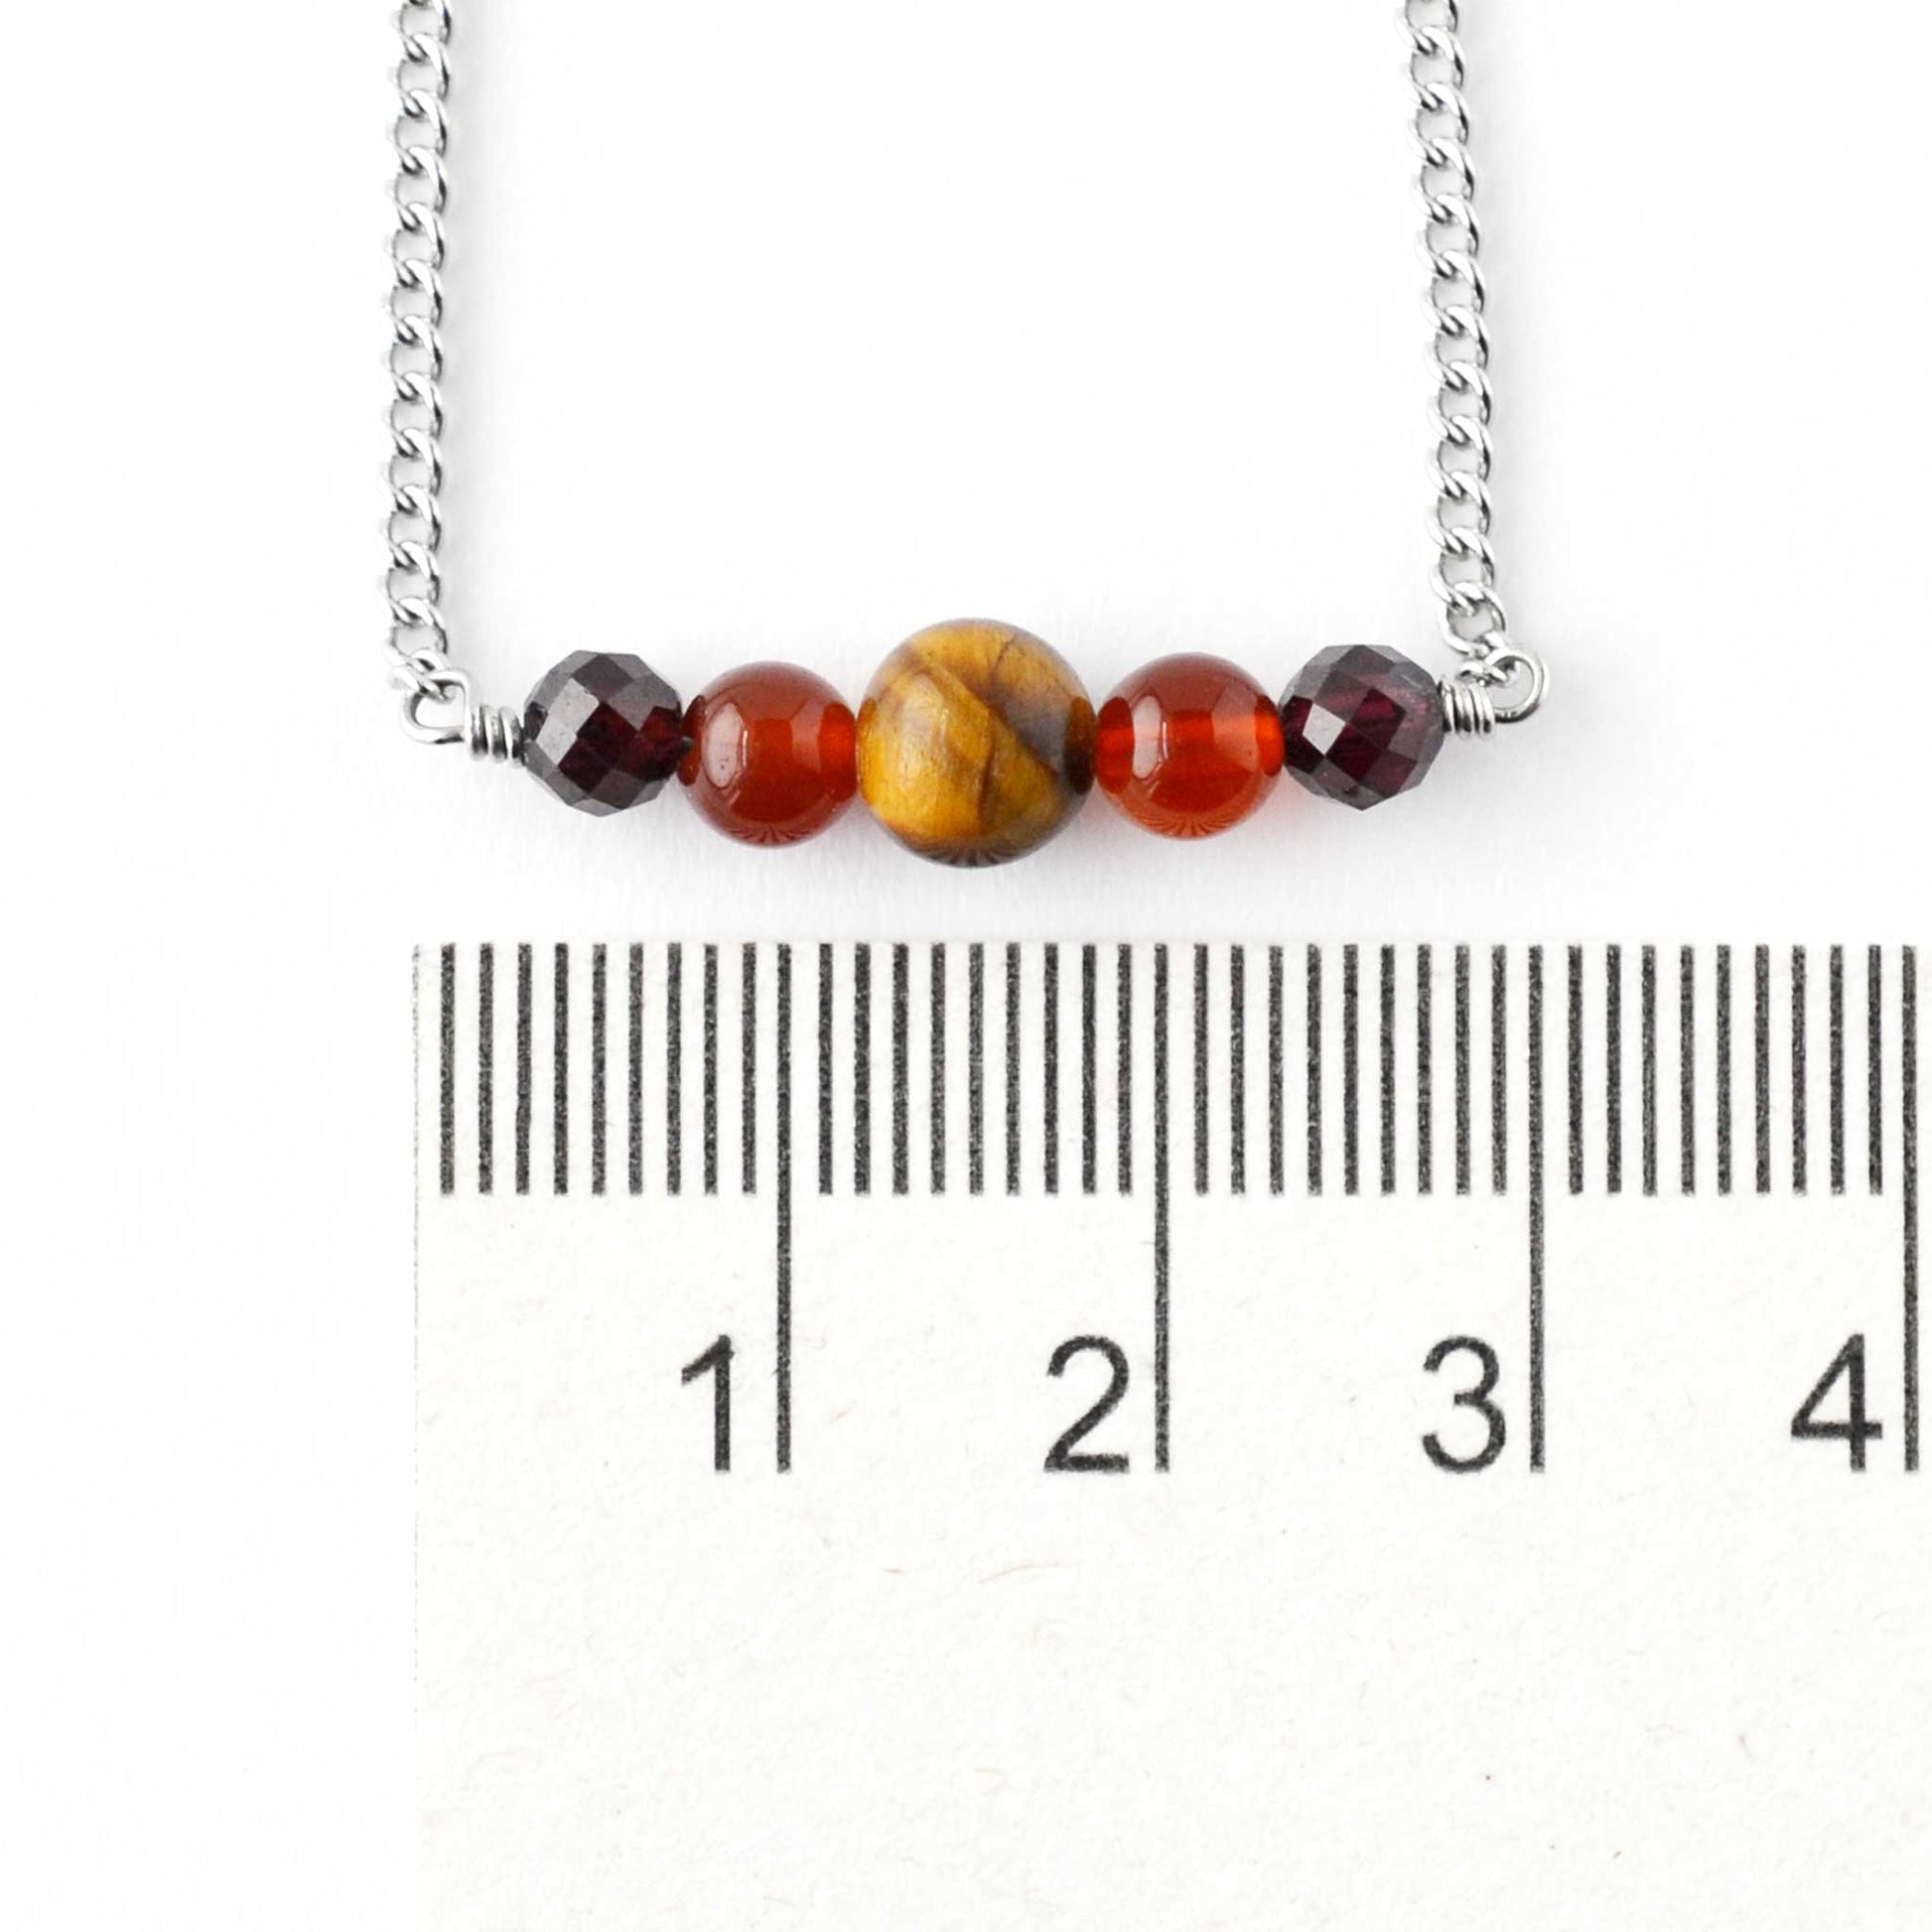 Dark gemstone bead necklace next to ruler